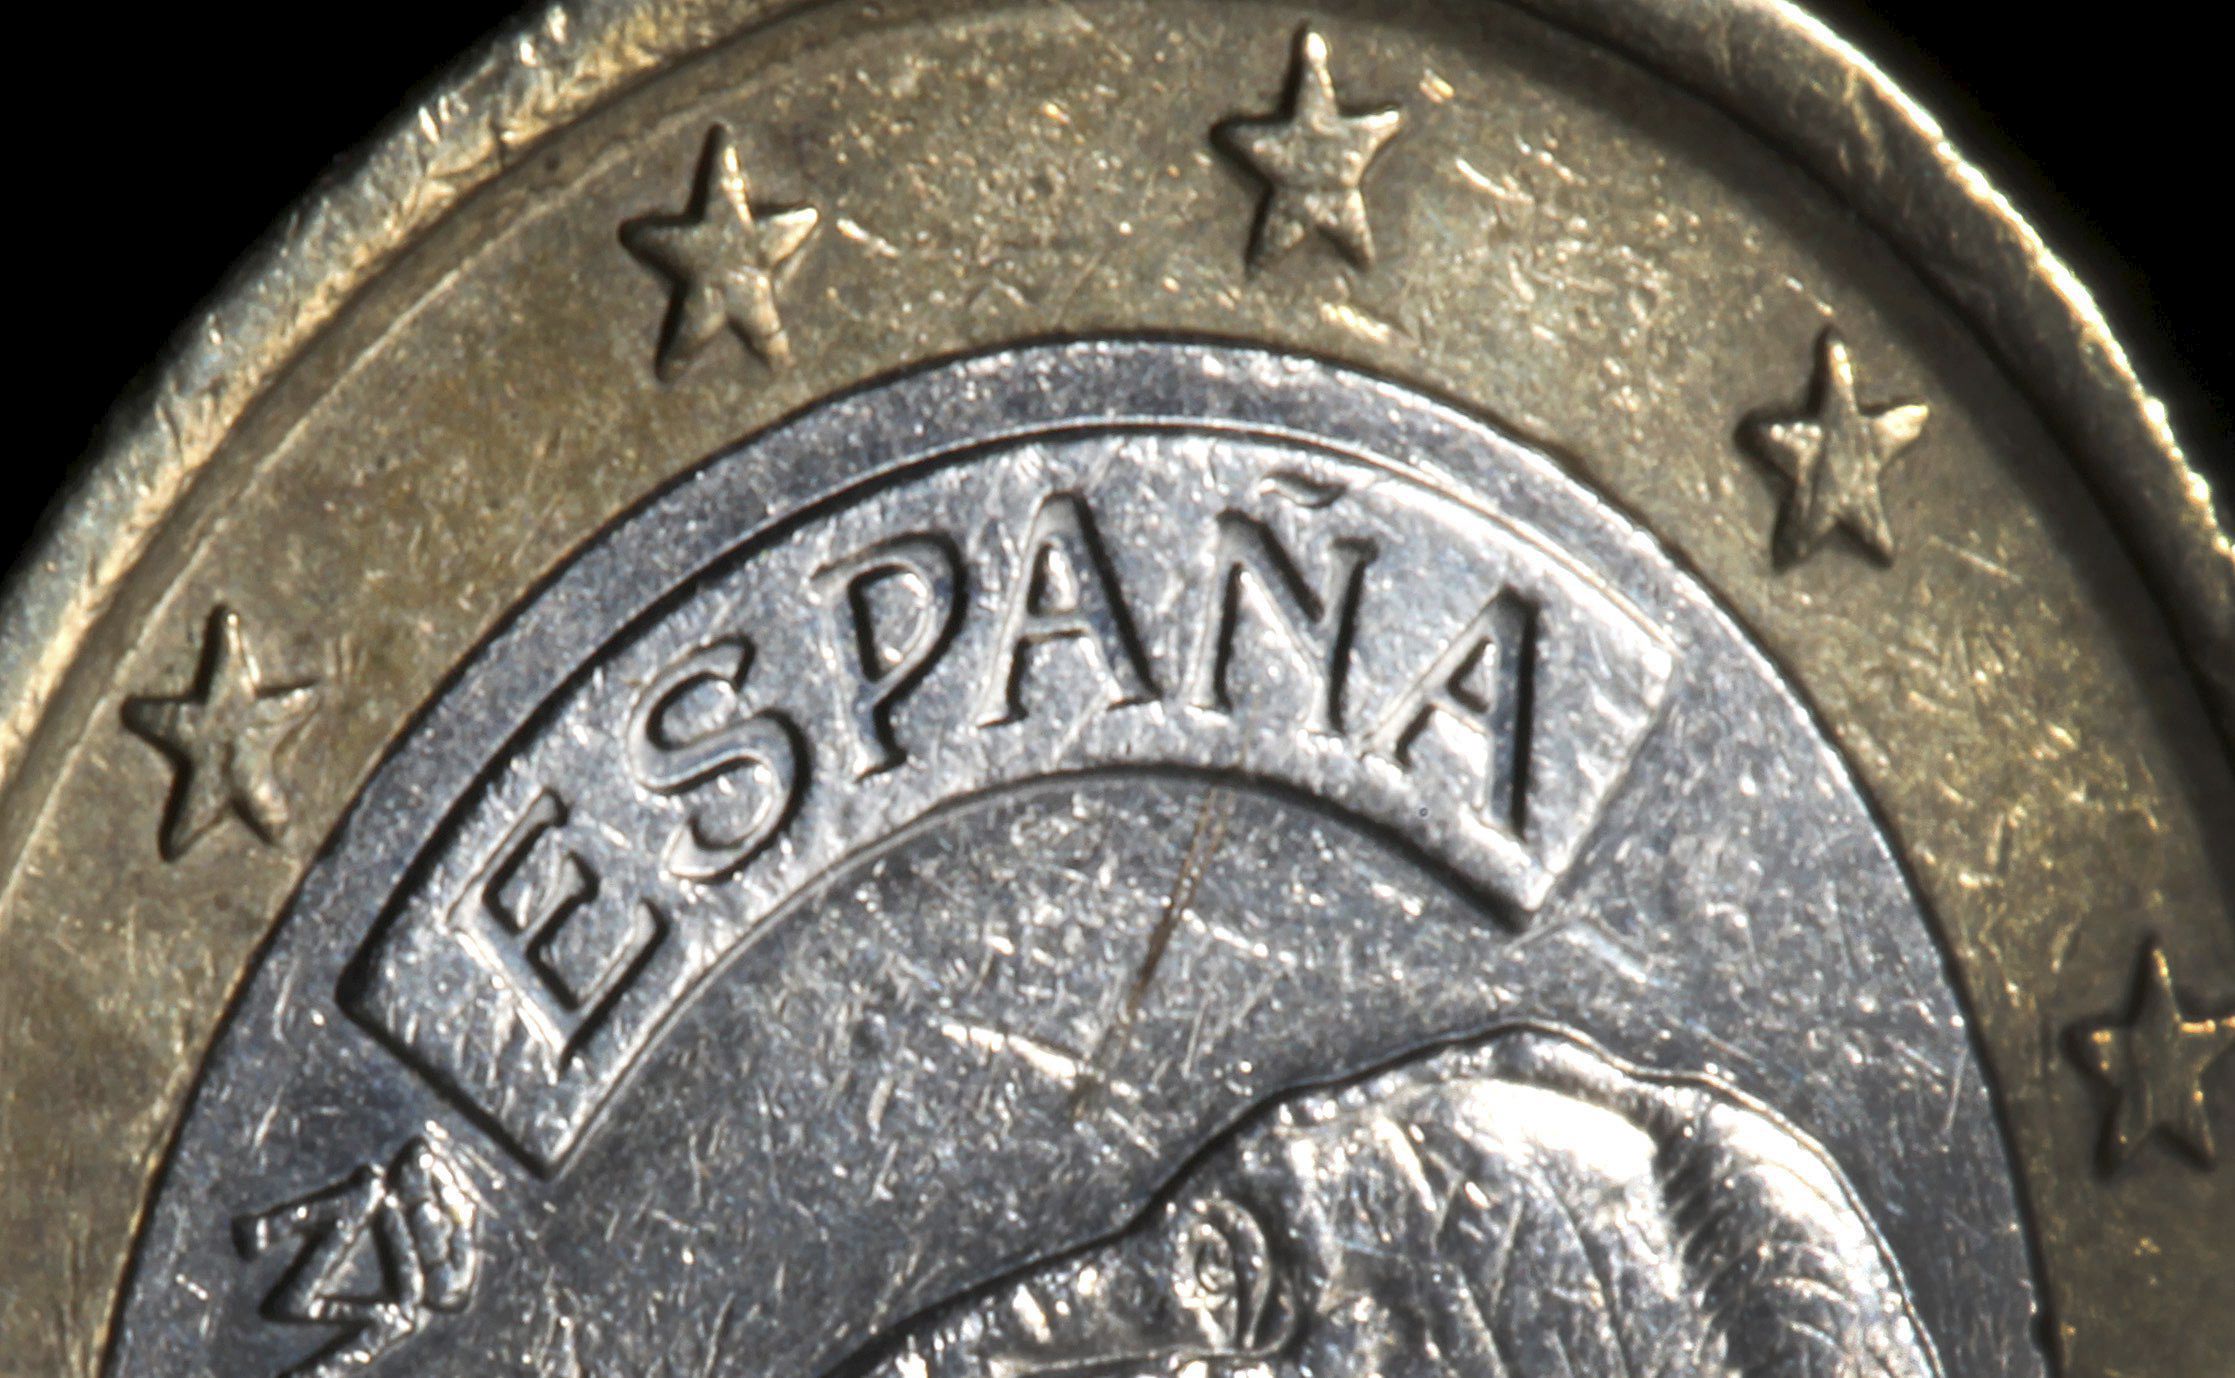  Una moneda de euro de España en Duesseldorf